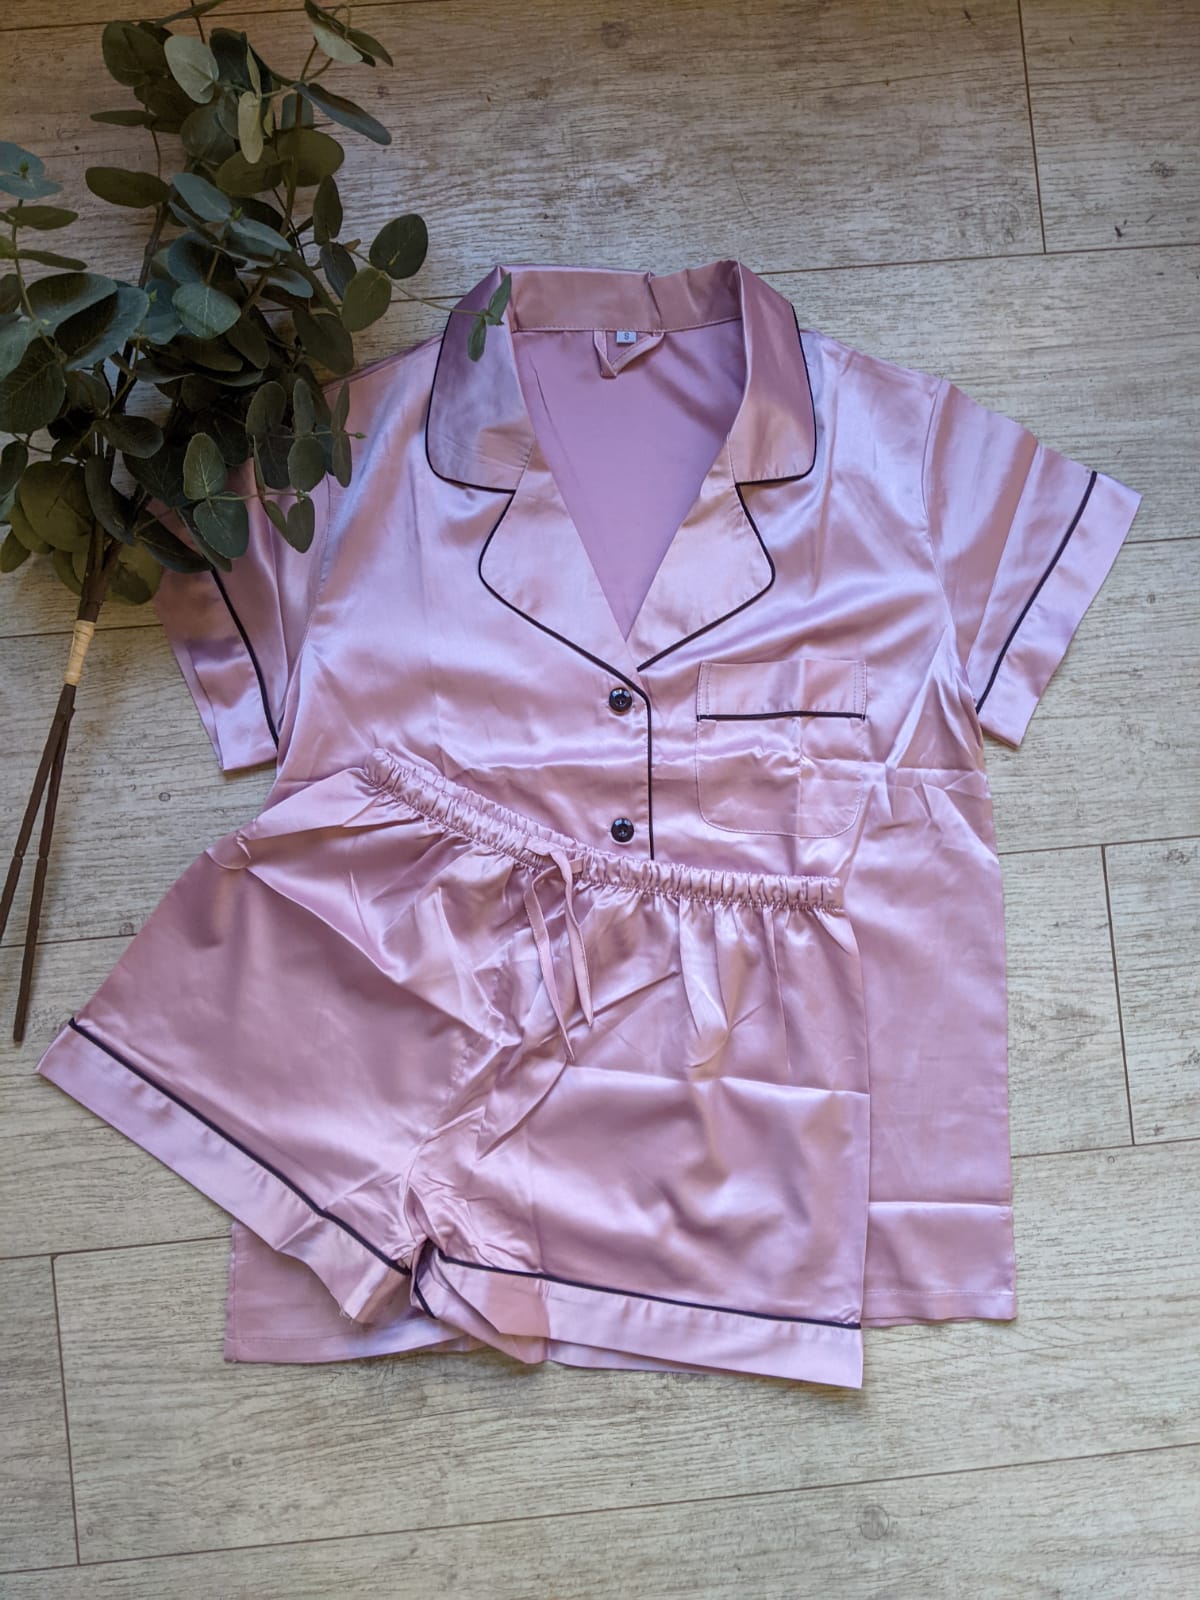 Satin Personalised Pyjama Set - Nude Pink and Black